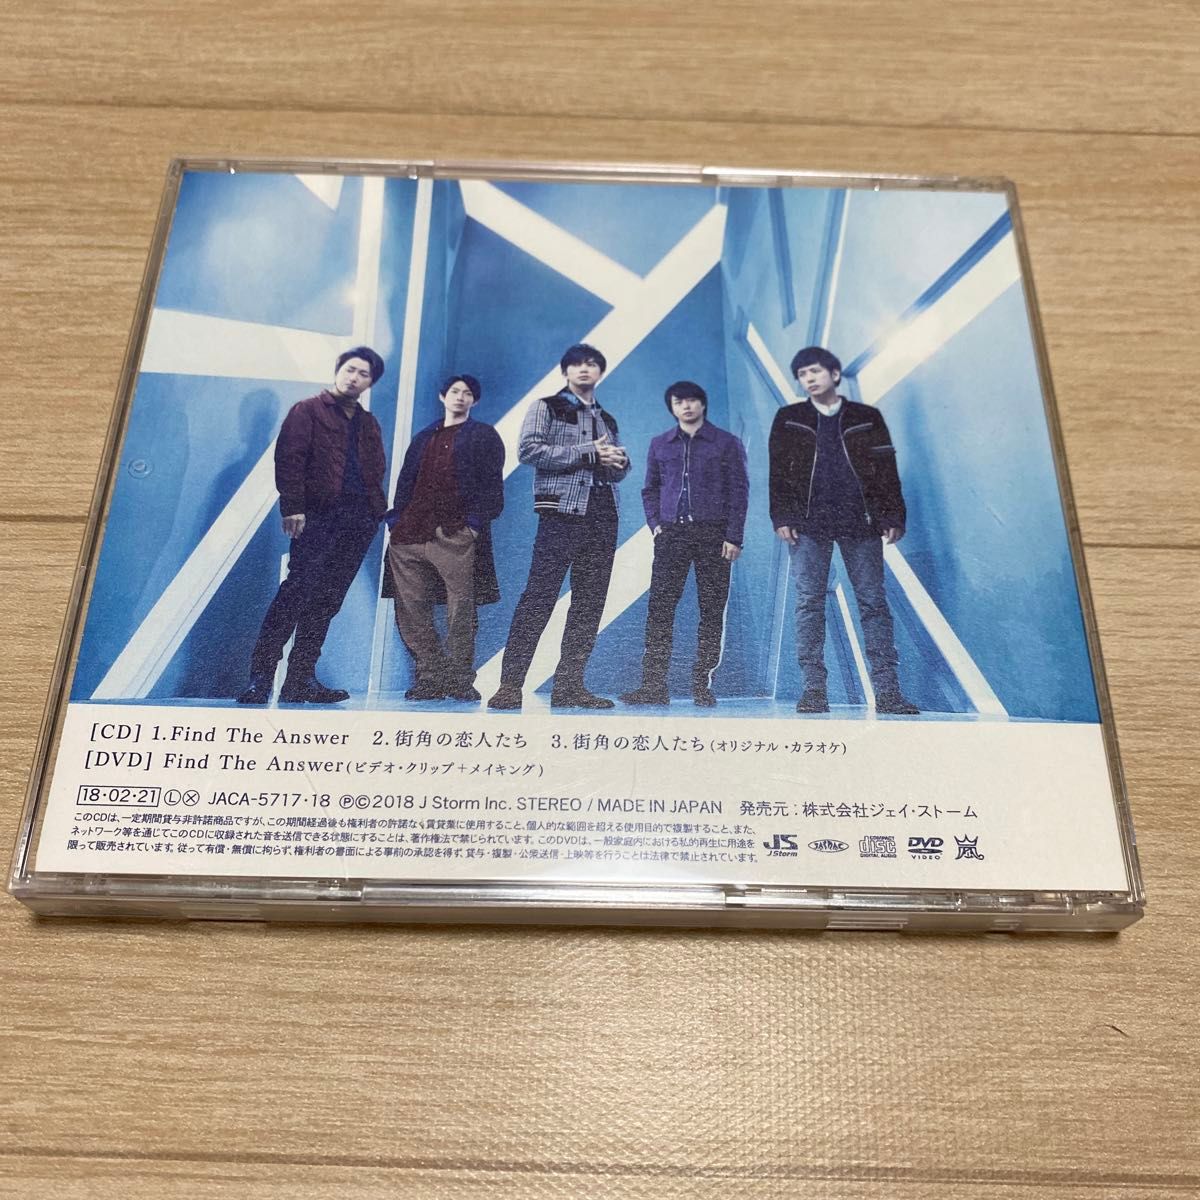  初回限定盤 嵐 CD+DVD/Find The Answer 18/2/21発売 